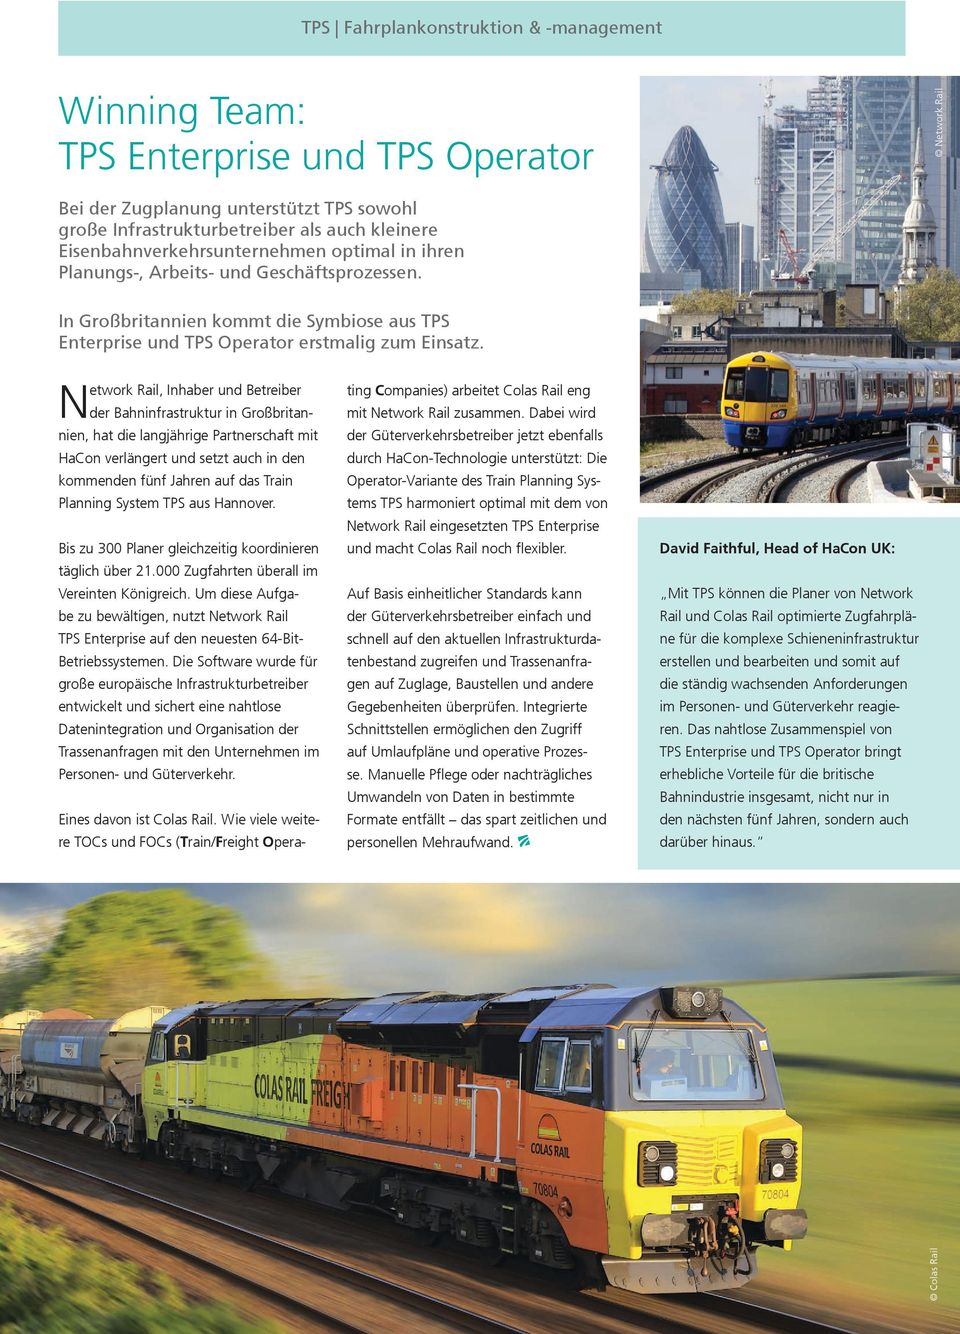 Network Rail, Inhaber und Betreiber der Bahninfrastruktur in Großbritannien, hat die langjährige Partnerschaft mit HaCon verlängert und setzt auch in den kommenden fünf Jahren auf das Train Planning